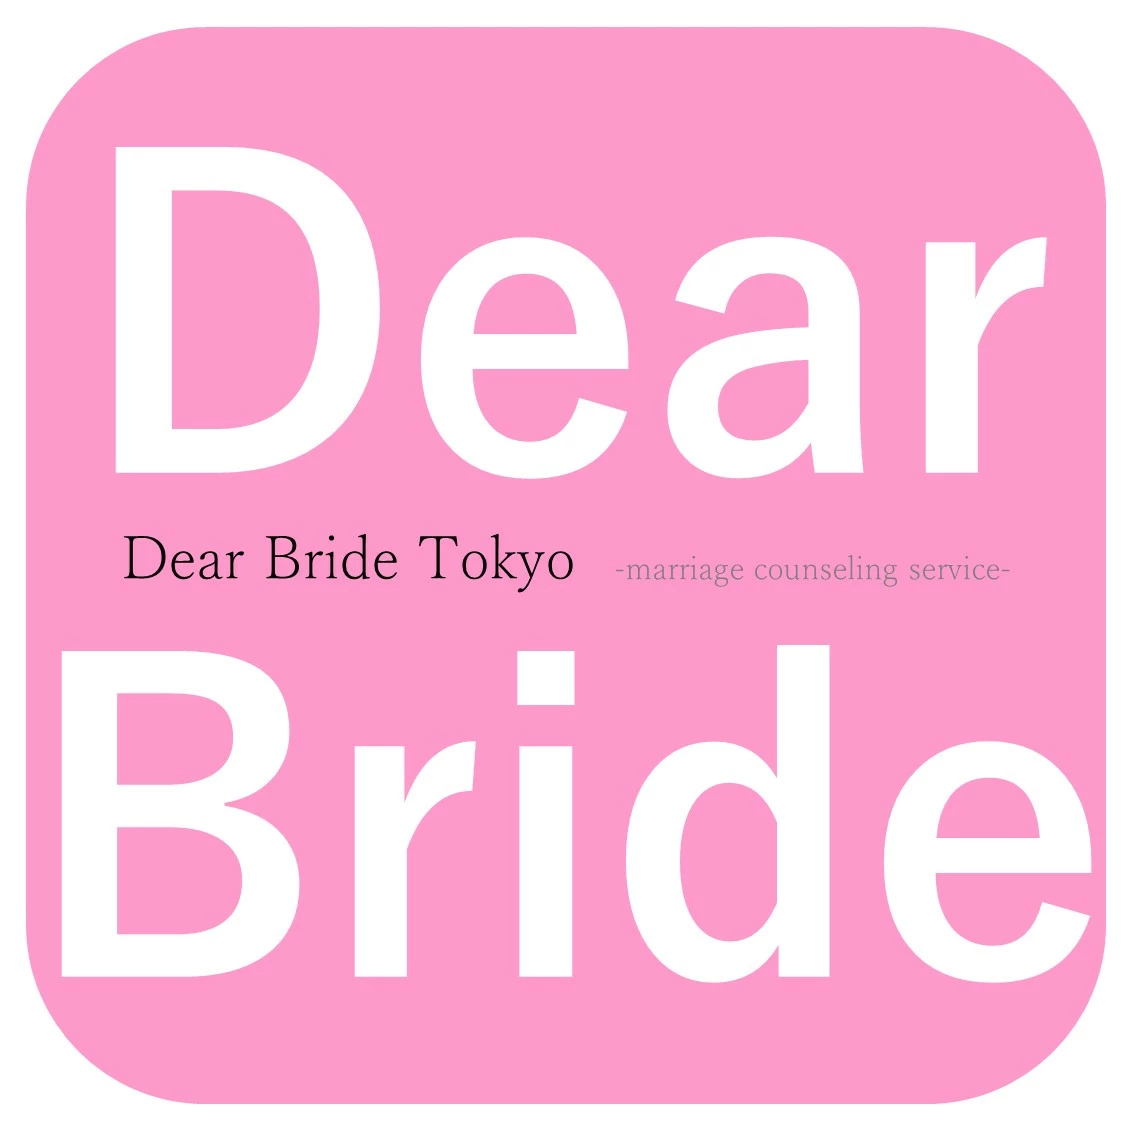 Dear Bride Tokyoのロゴ